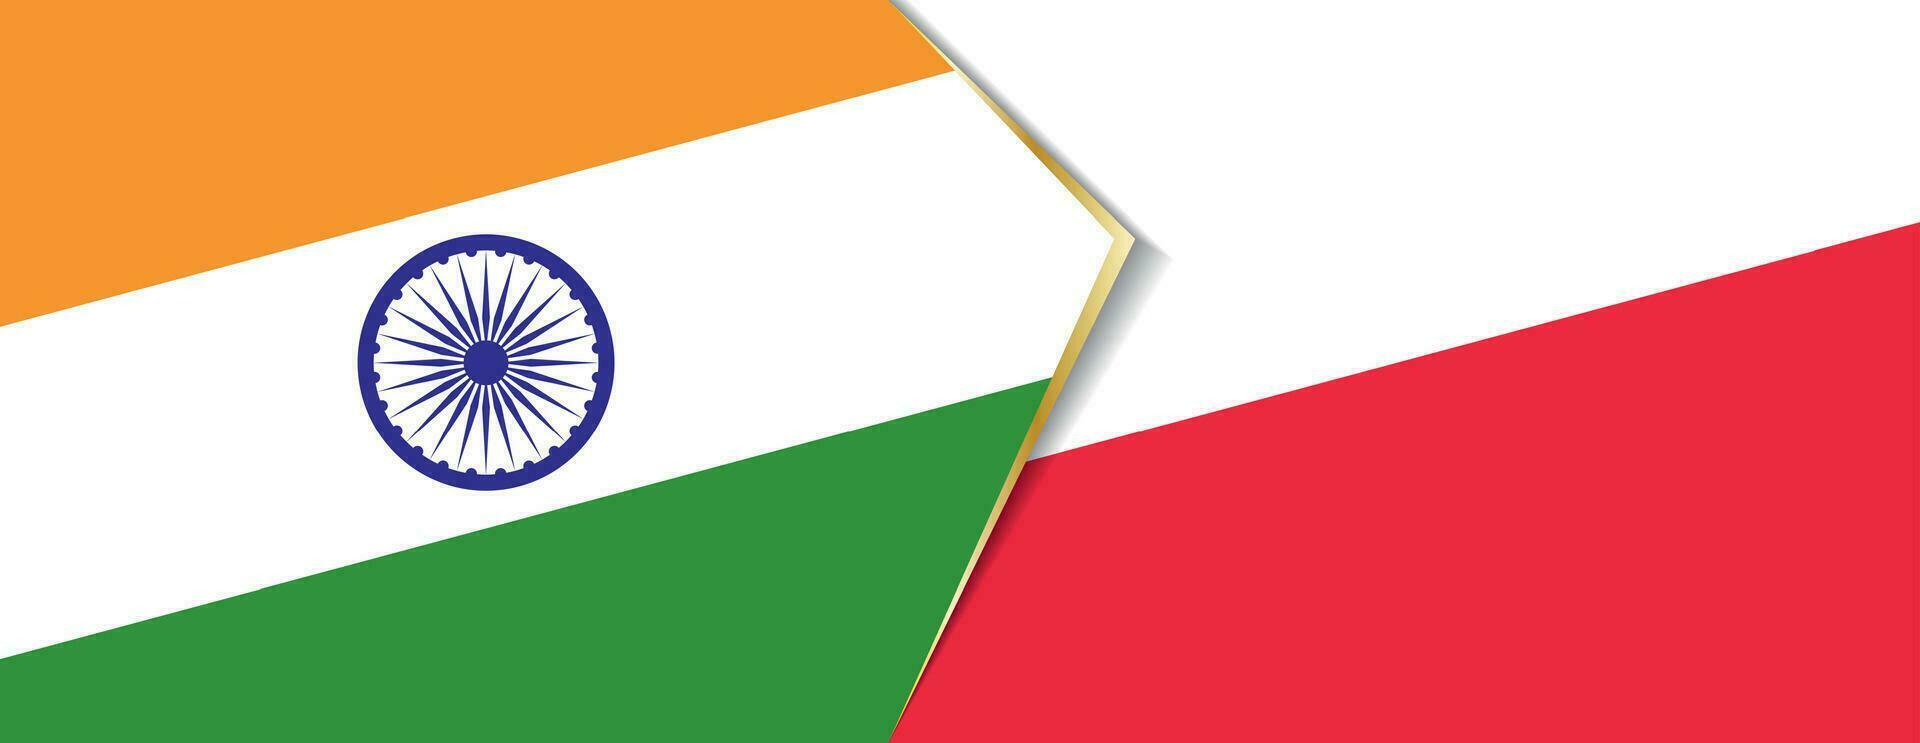 India y Polonia banderas, dos vector banderas